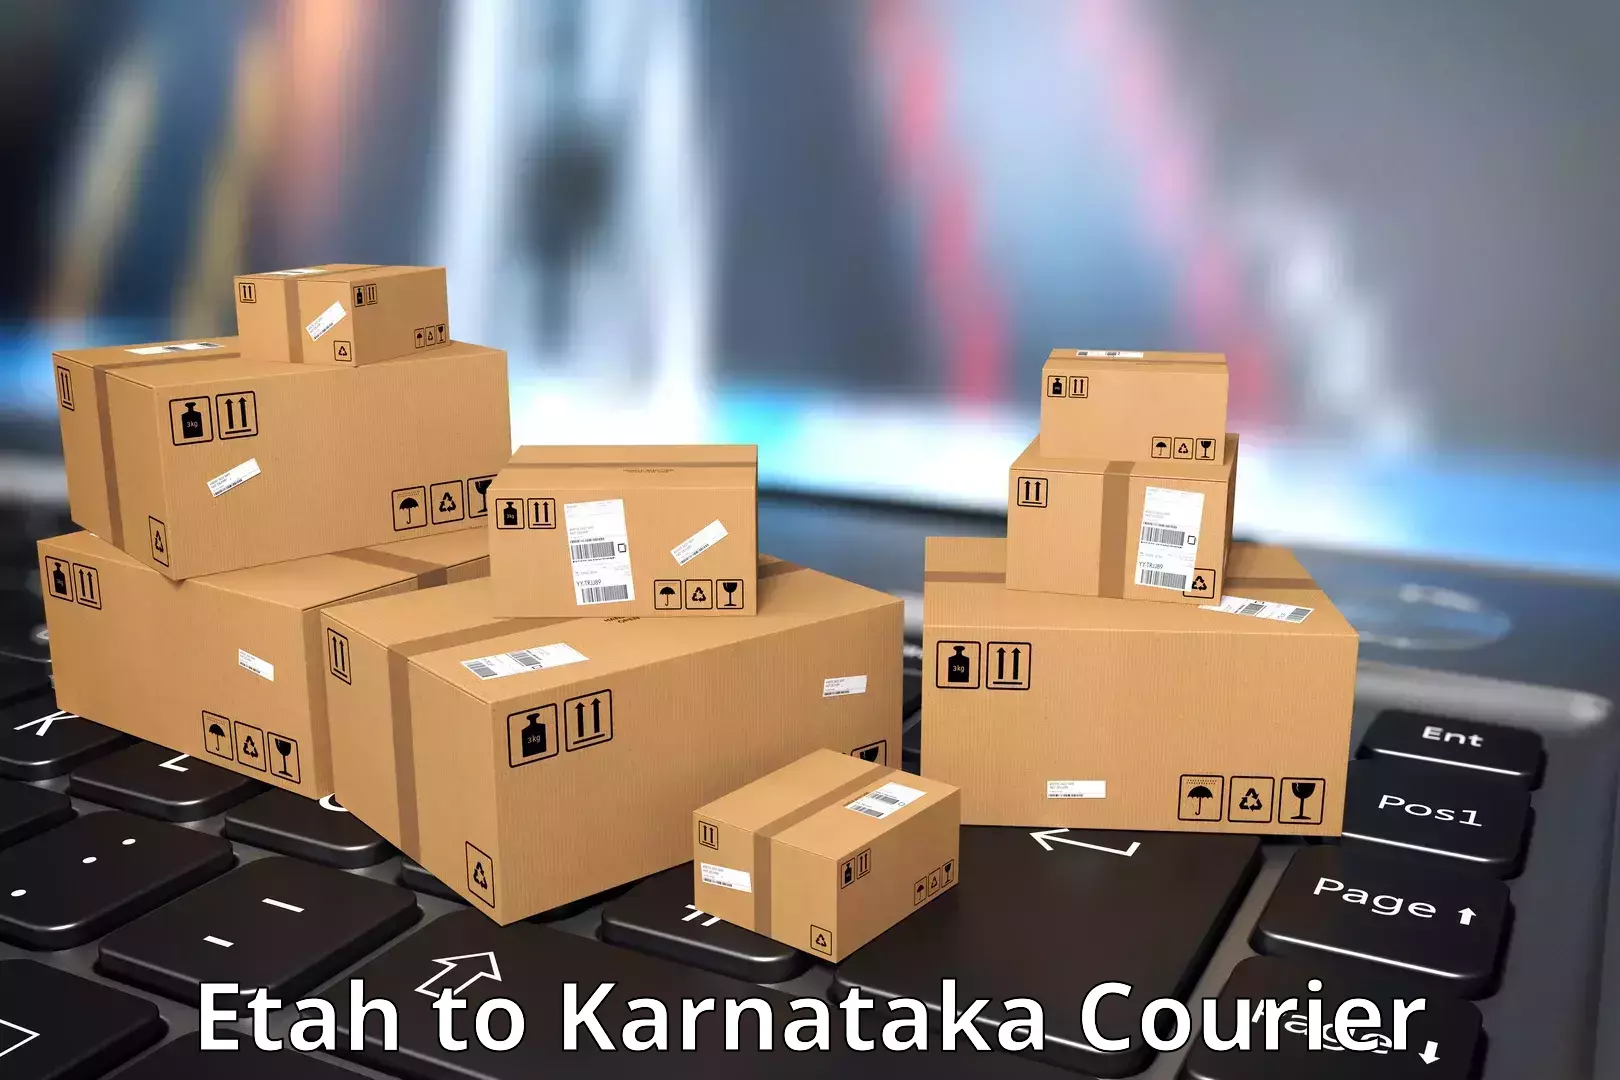 Advanced courier platforms Etah to Karnataka